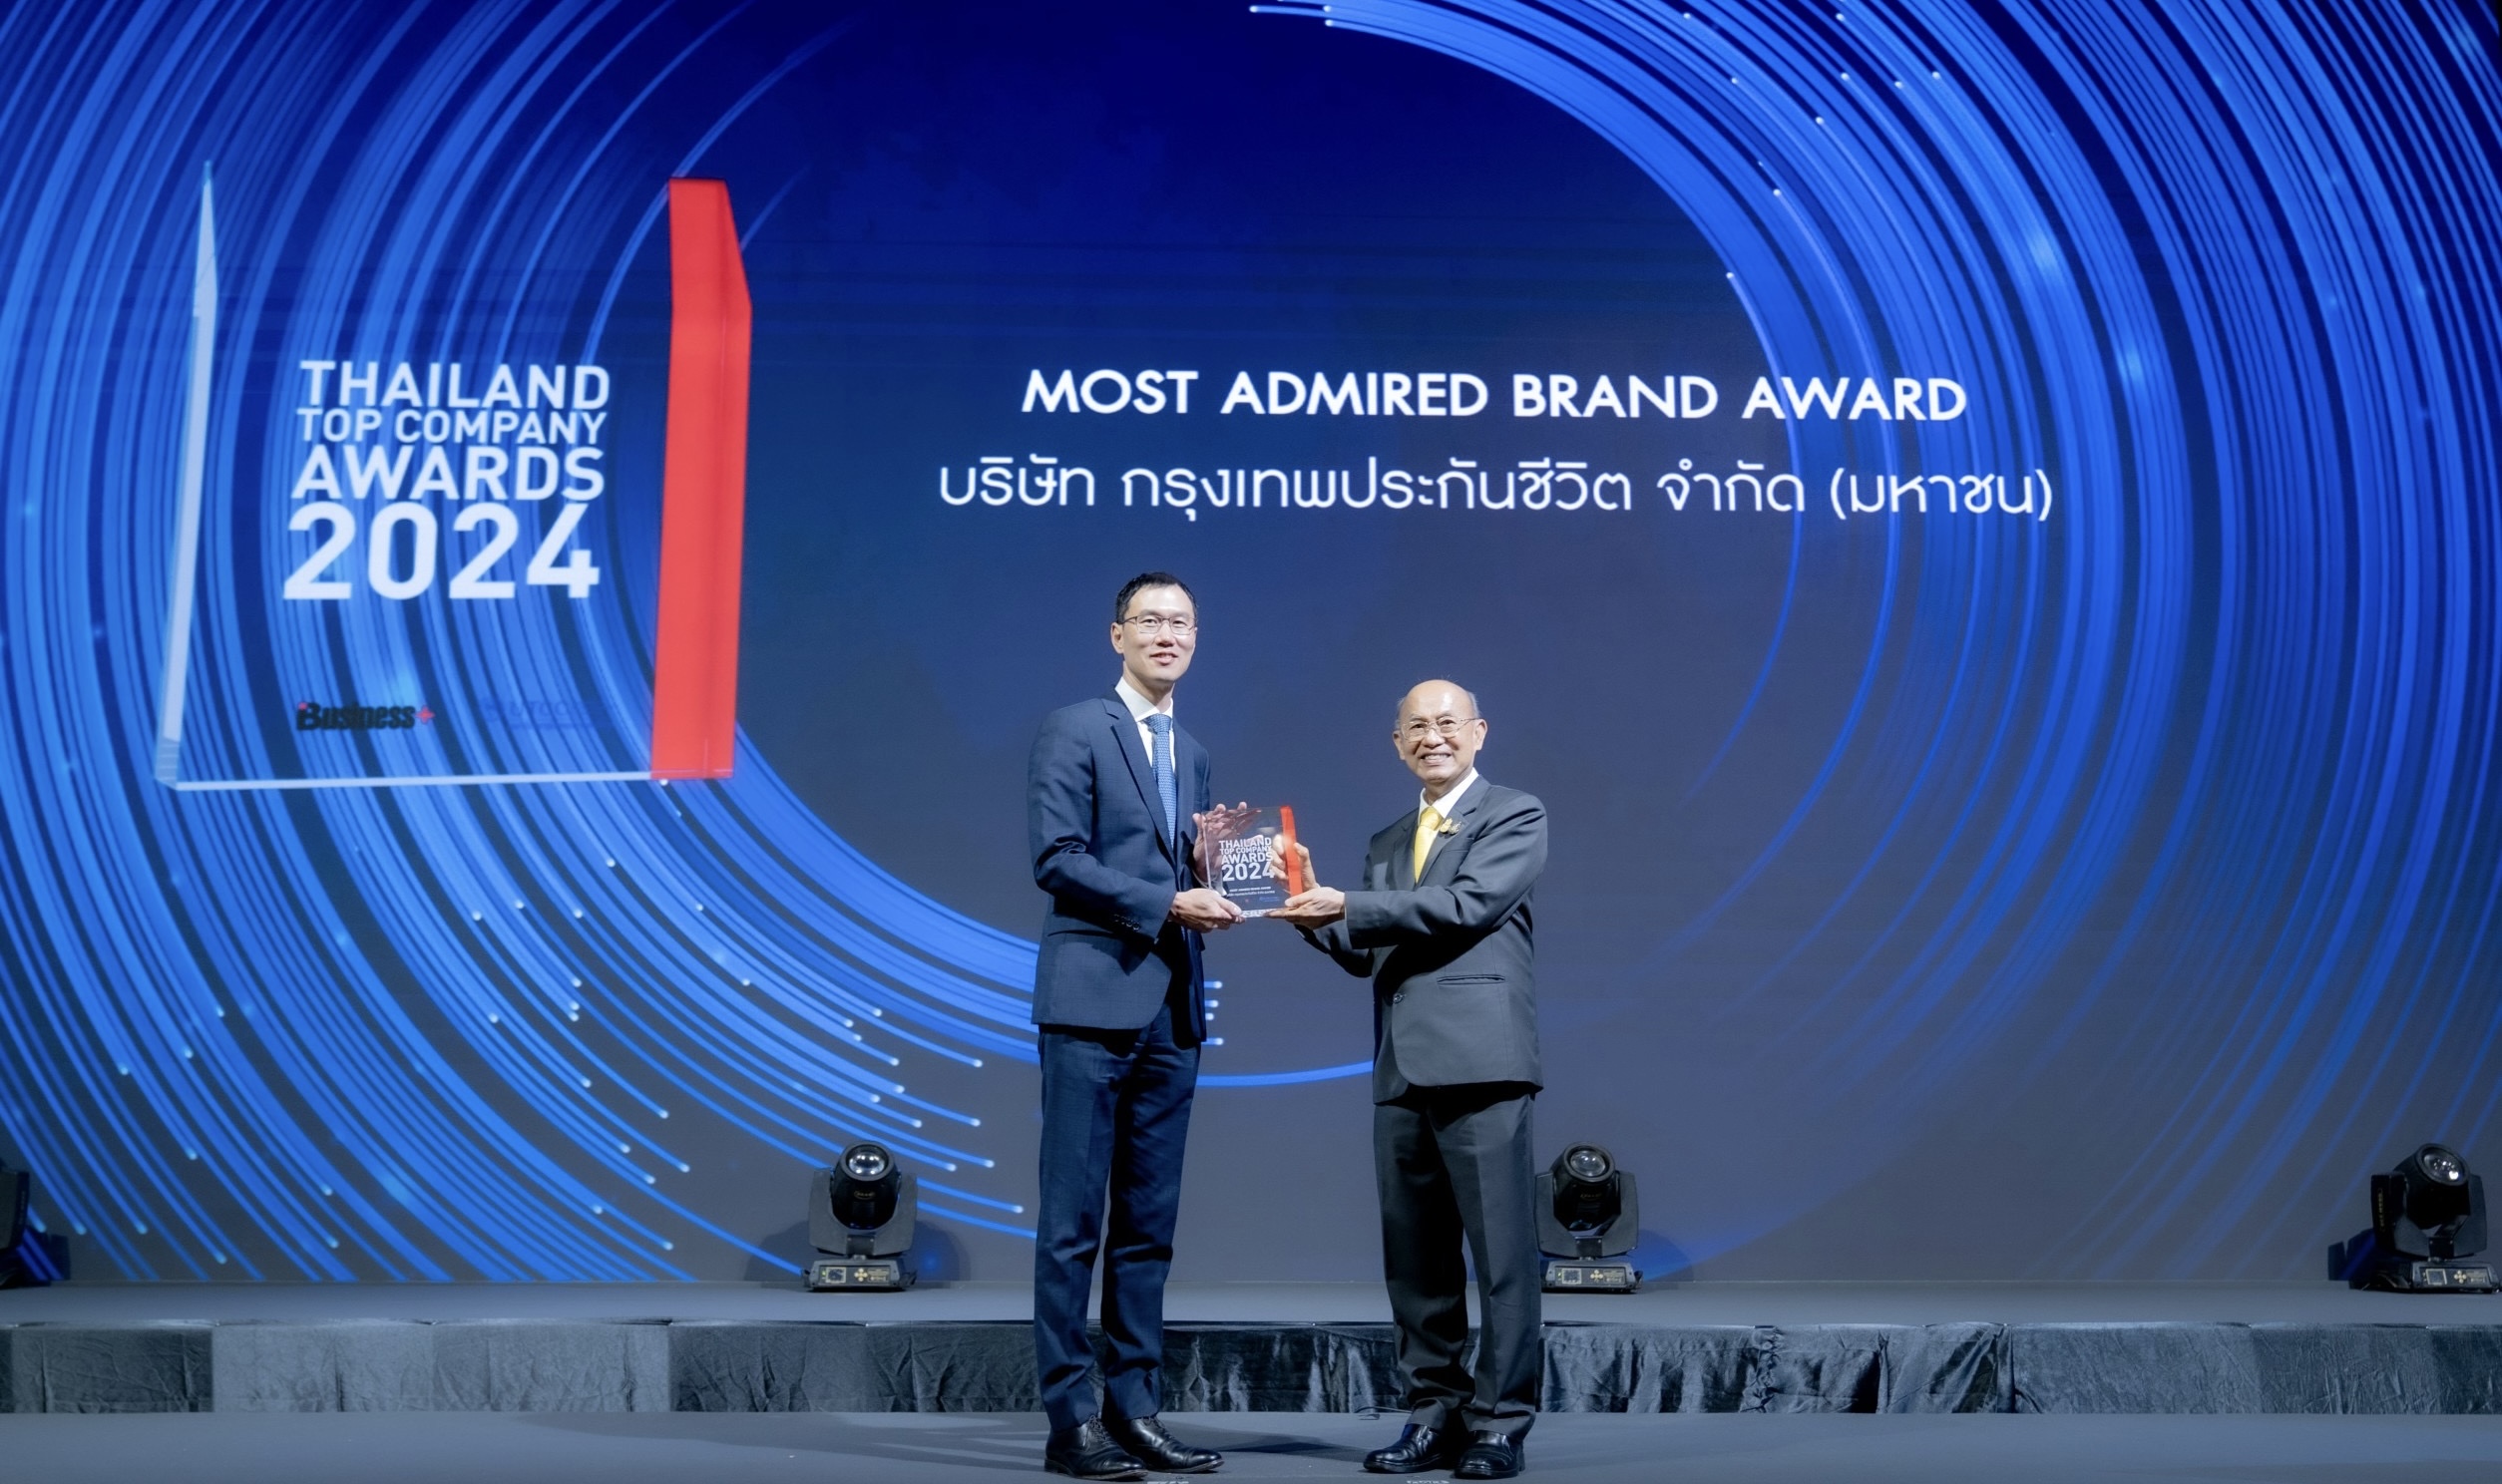 กรุงเทพประกันชีวิต คว้ารางวัล “สุดยอดแบรนด์ที่ครองใจผู้บริโภค”จากเวที Thailand Top Company Awards 2024